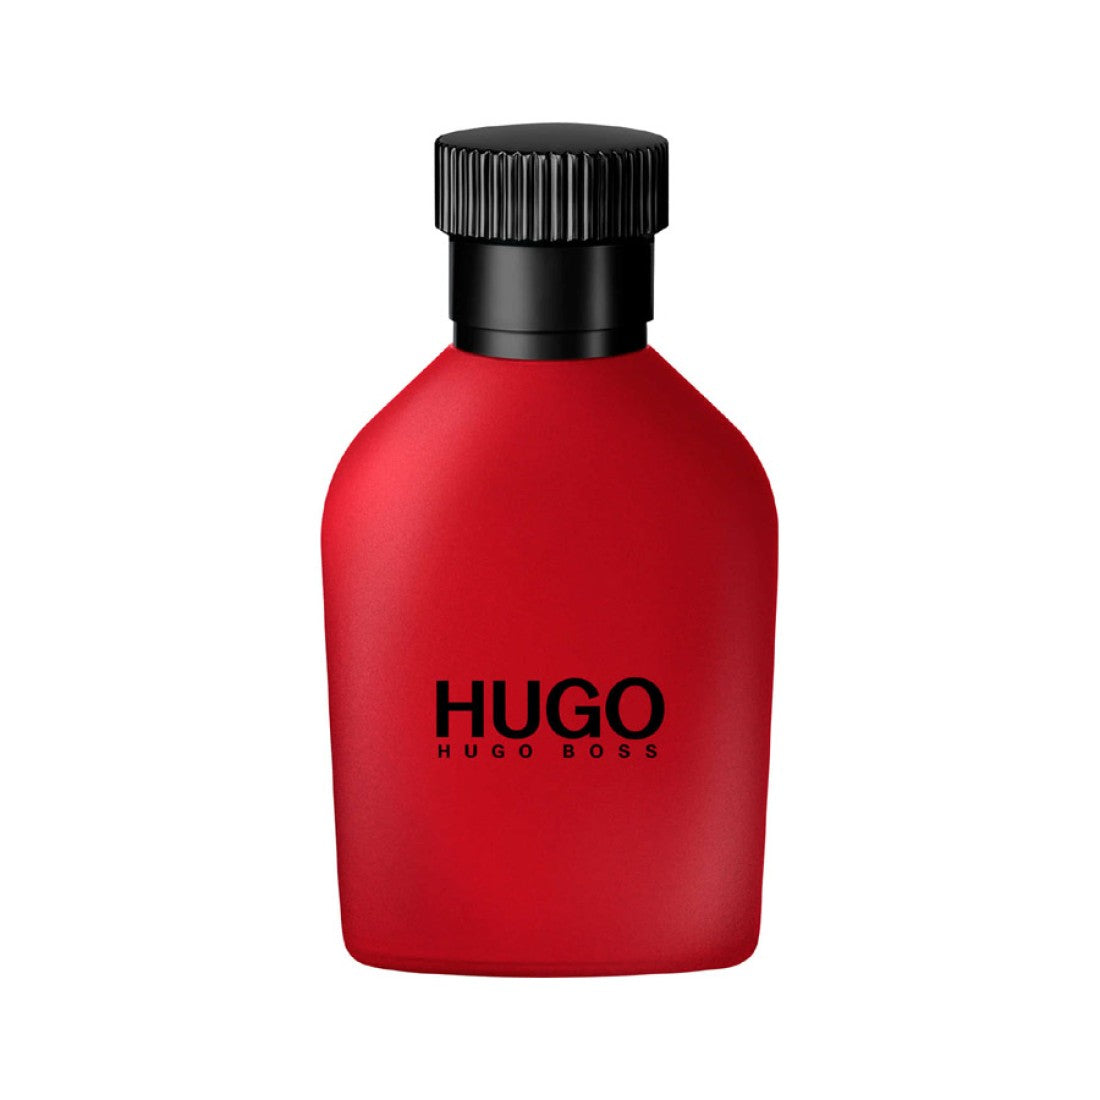 Hugo Boss Red Eau De Toilette Spray 150ml For Men